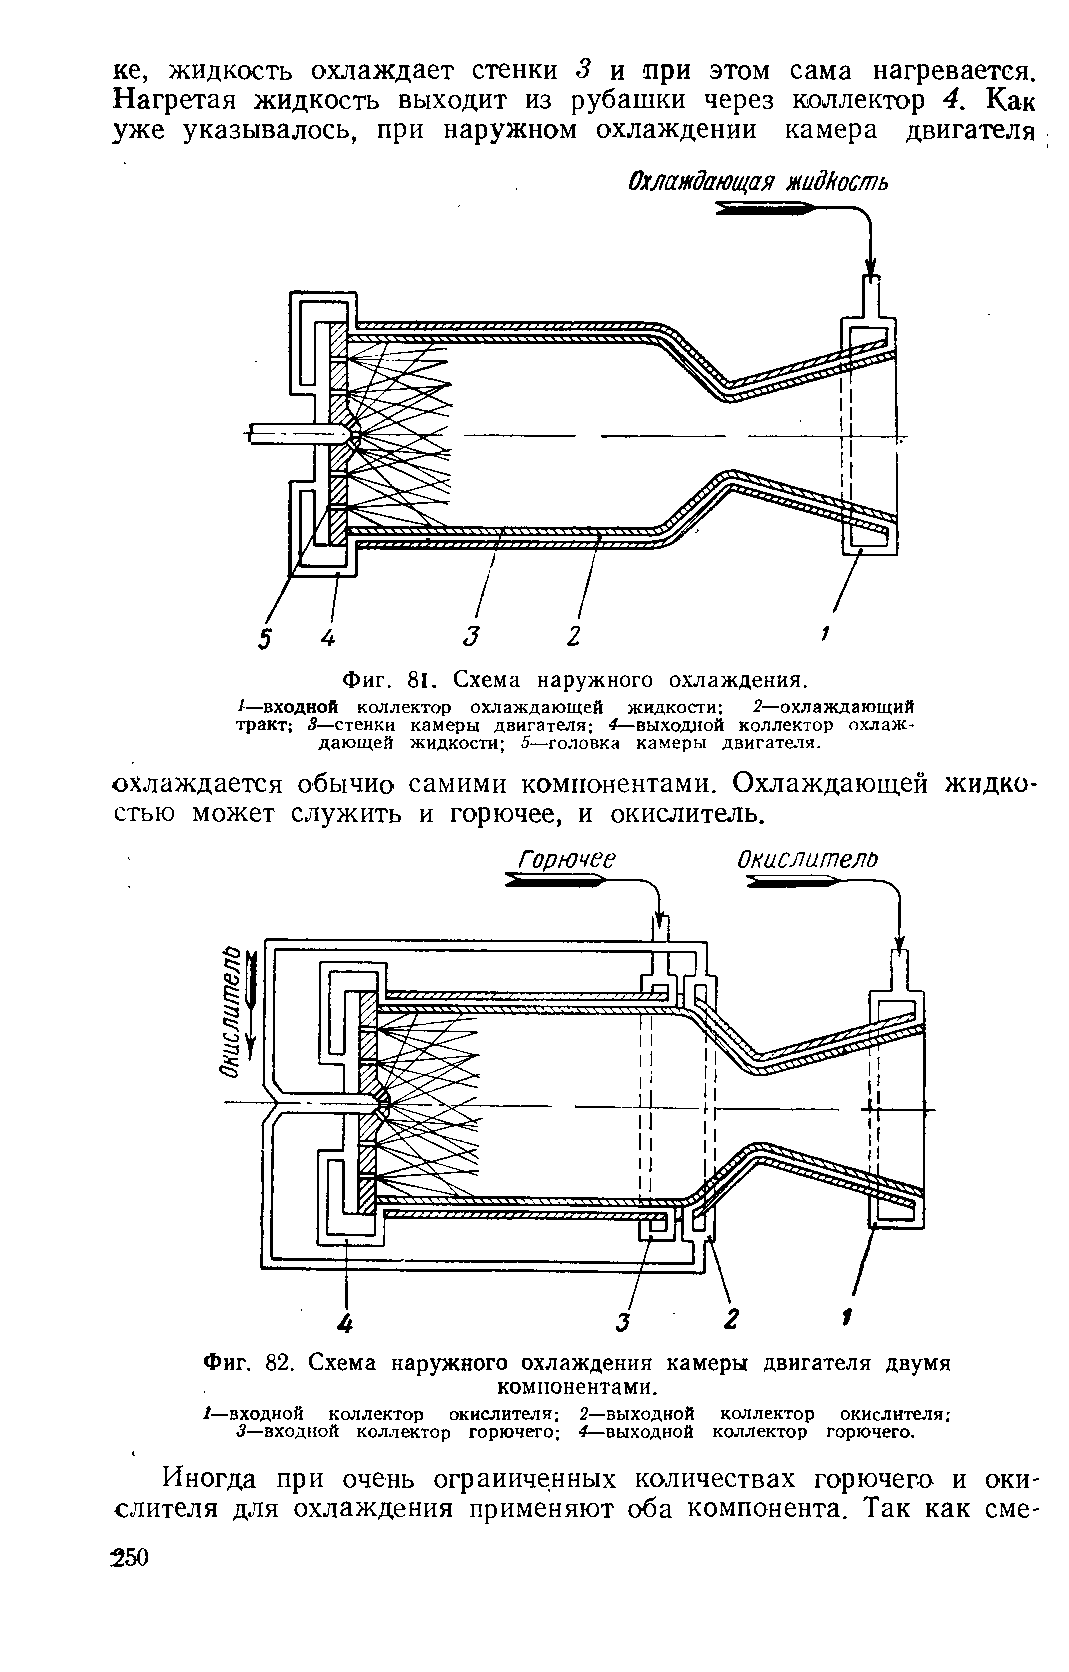 Фиг. 82. Схема наружного охлаждения <a href="/info/371671">камеры двигателя</a> двумя компонентами.
